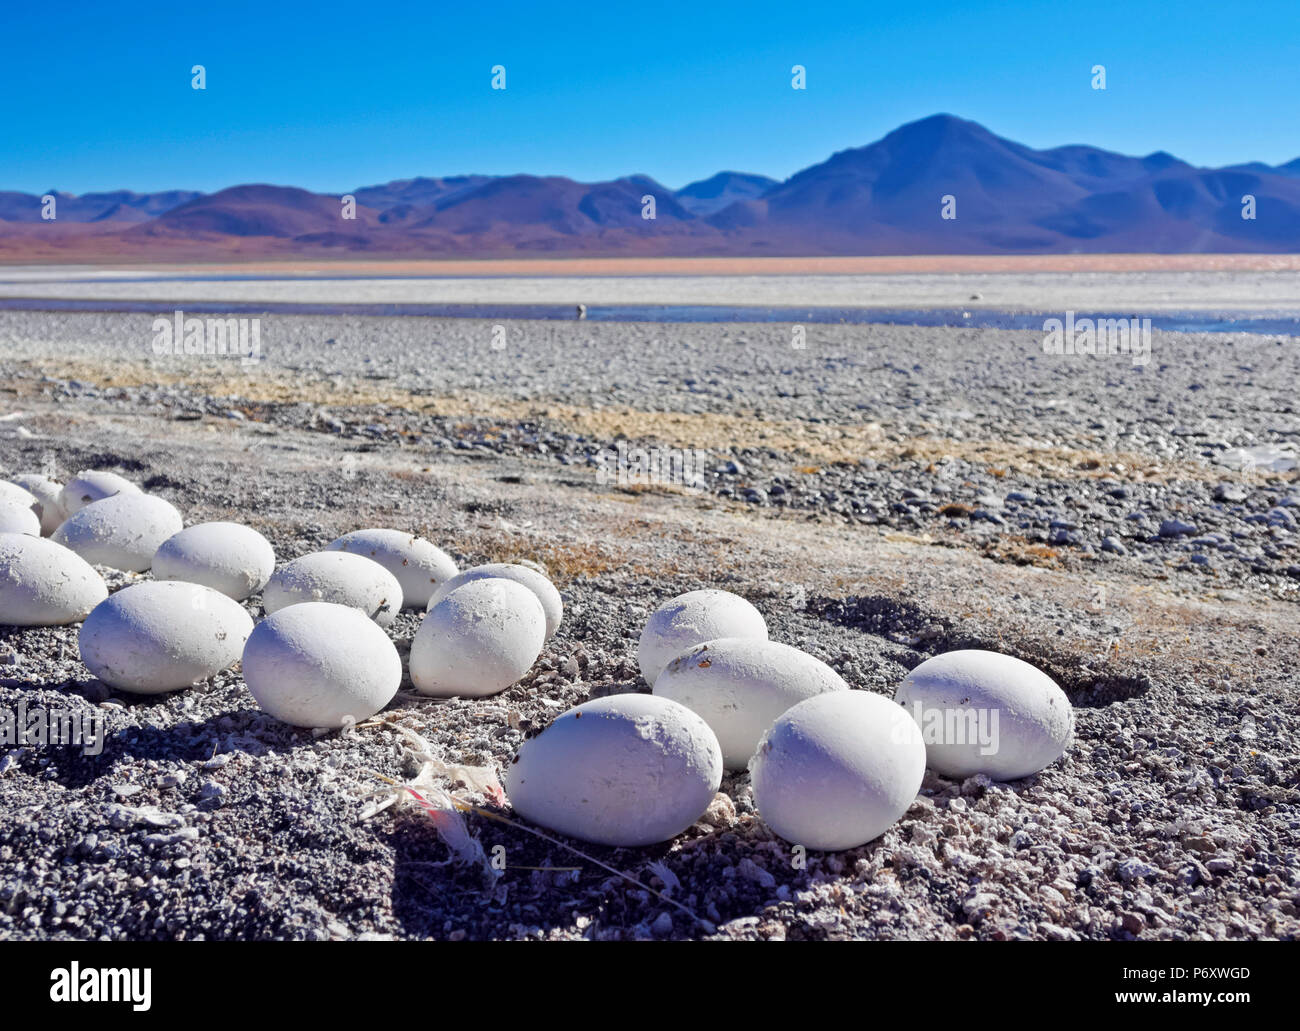 Bolivia, Potosi Departmant, Sur Lipez Province, Eduardo Avaroa Andean Fauna National Reserve, Abandoned Flamingo Eggs on the shore of the Laguna Colorada. Stock Photo